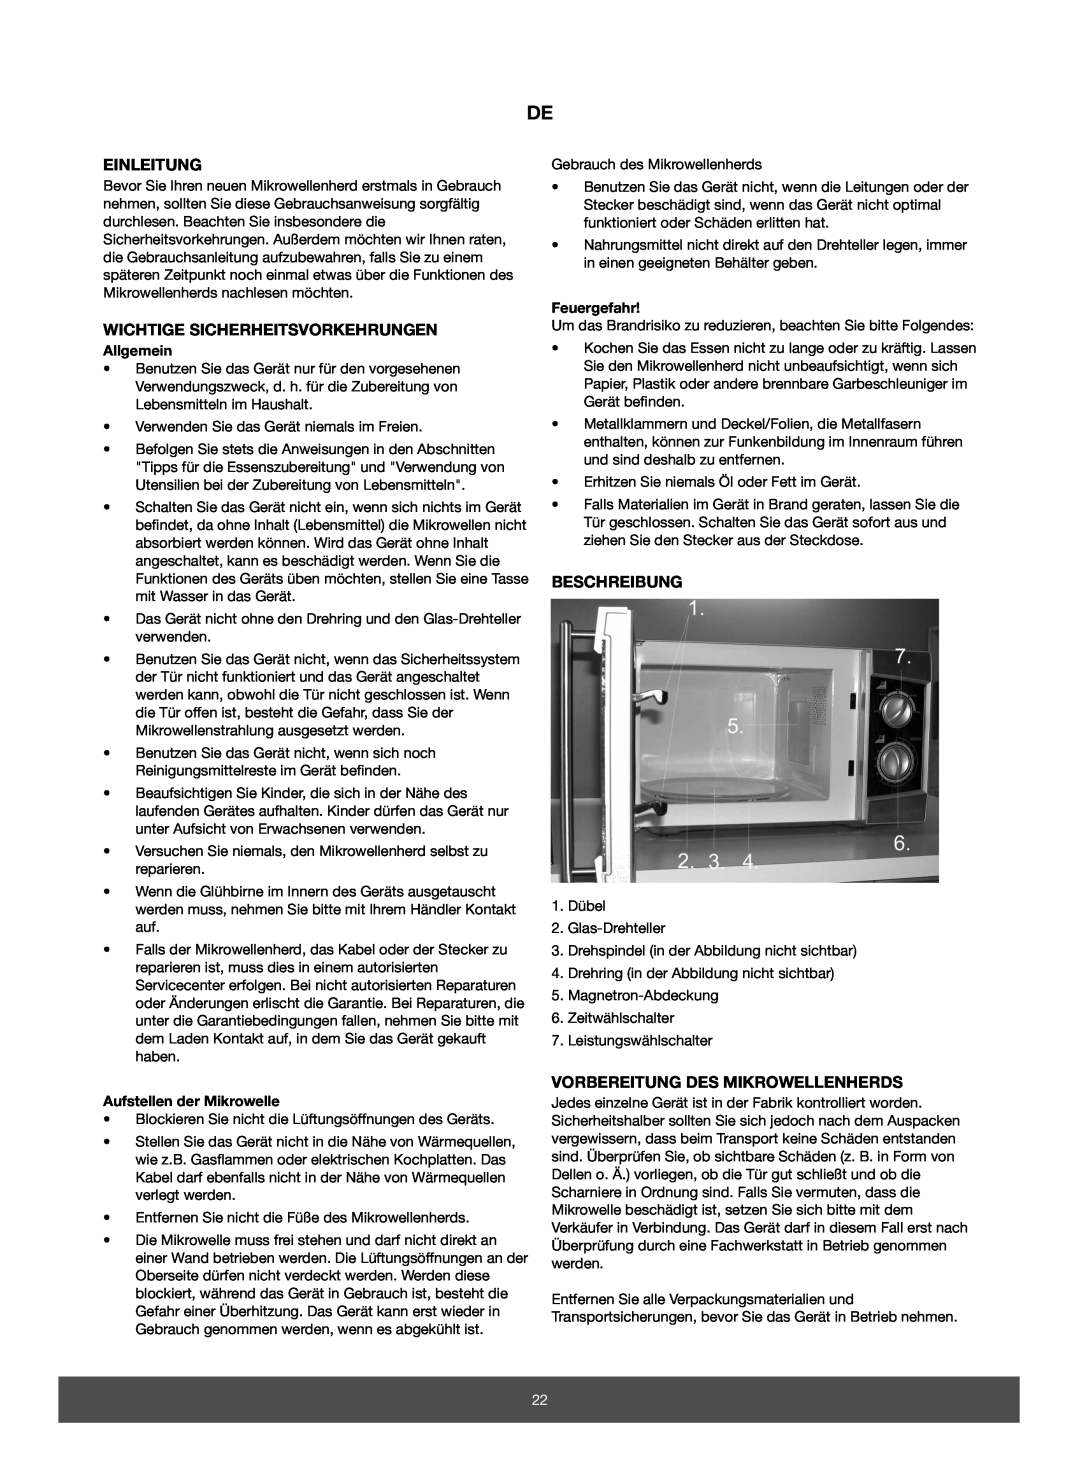 Melissa 653-070 Einleitung, Wichtige Sicherheitsvorkehrungen, Beschreibung, Vorbereitung Des Mikrowellenherds, Allgemein 